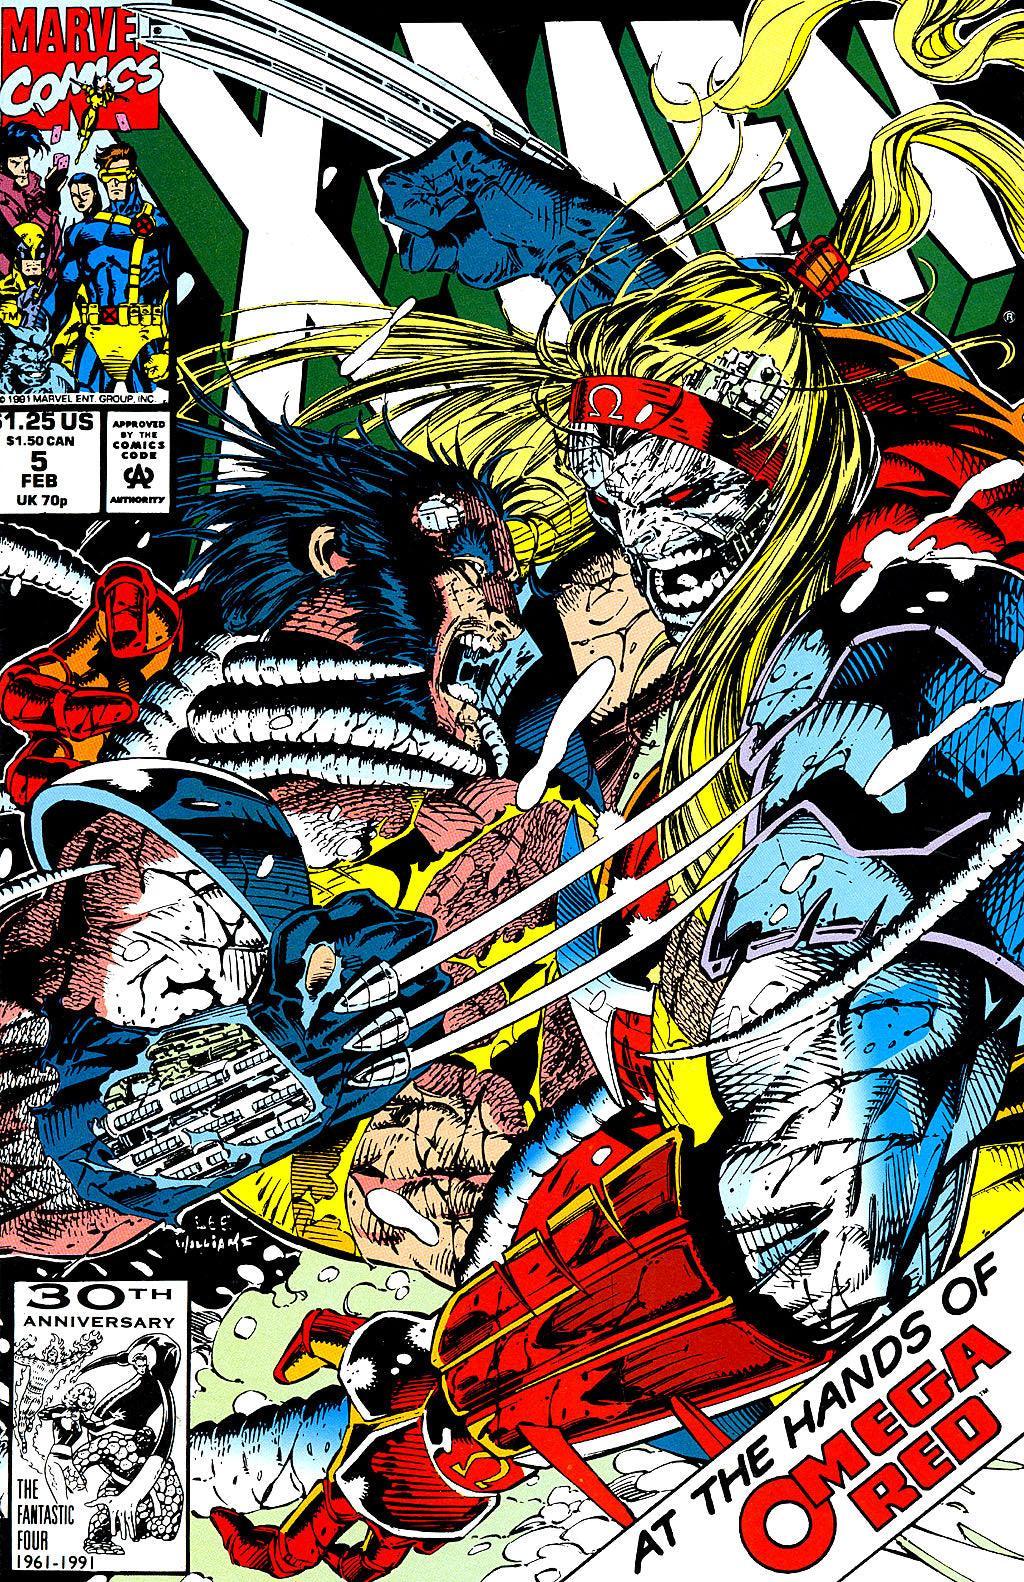 X-MEN VOL 2 #5 - Kings Comics